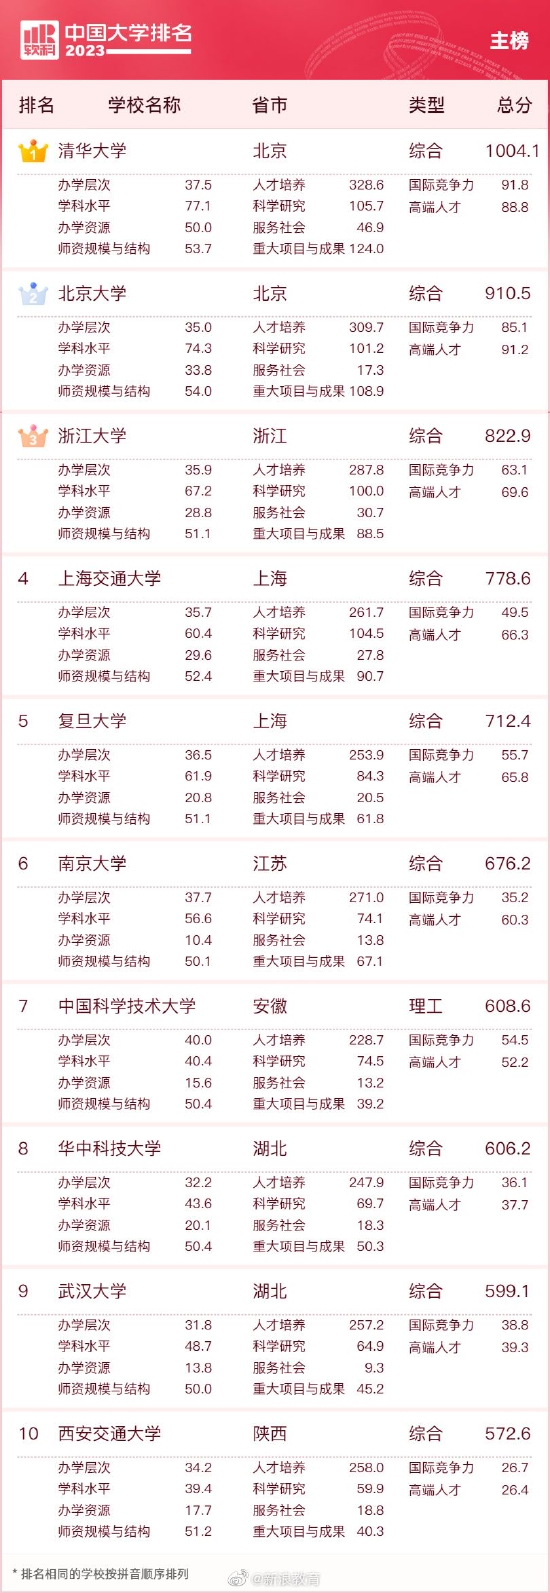 2023中国大学排名公布 清华北大浙大连续9年蝉联三甲